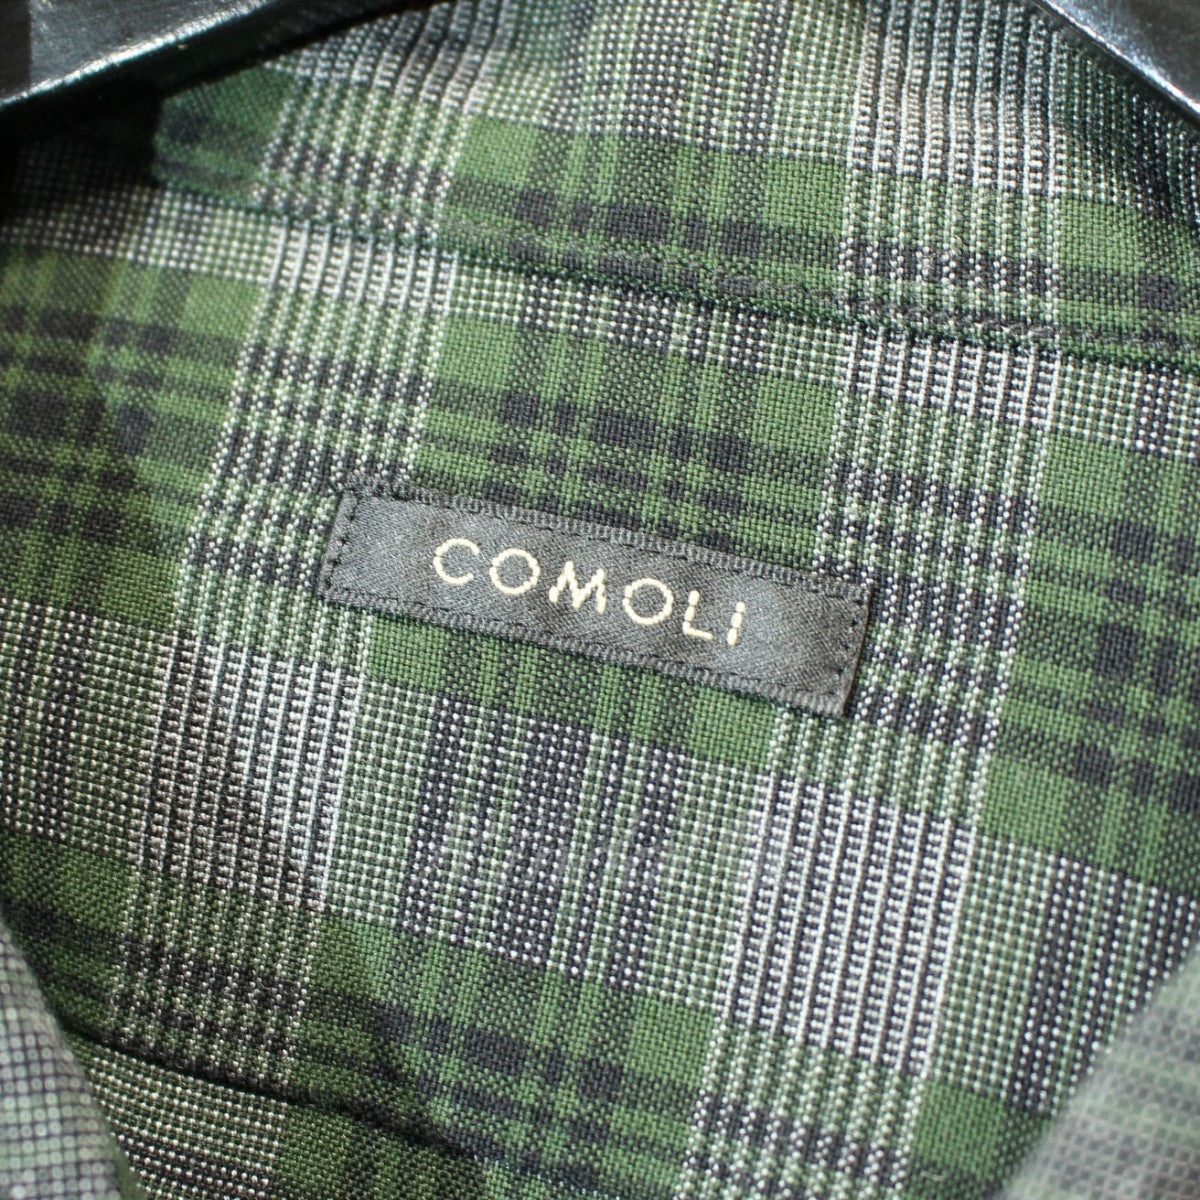 COMOLI(コモリ) 20SS レーヨンオープンカラーシャツ 長袖シャツ